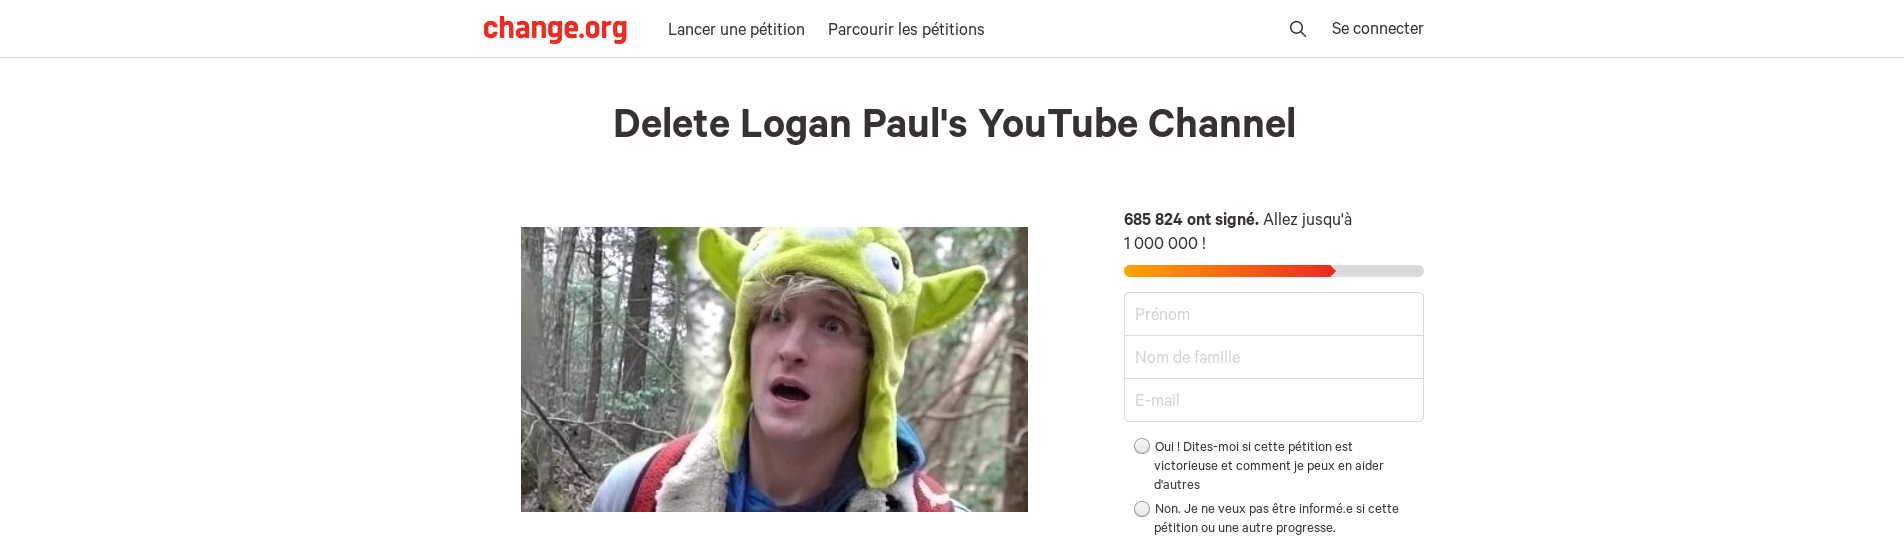 « Delete Paul Logan's YouTube Channel » change.org